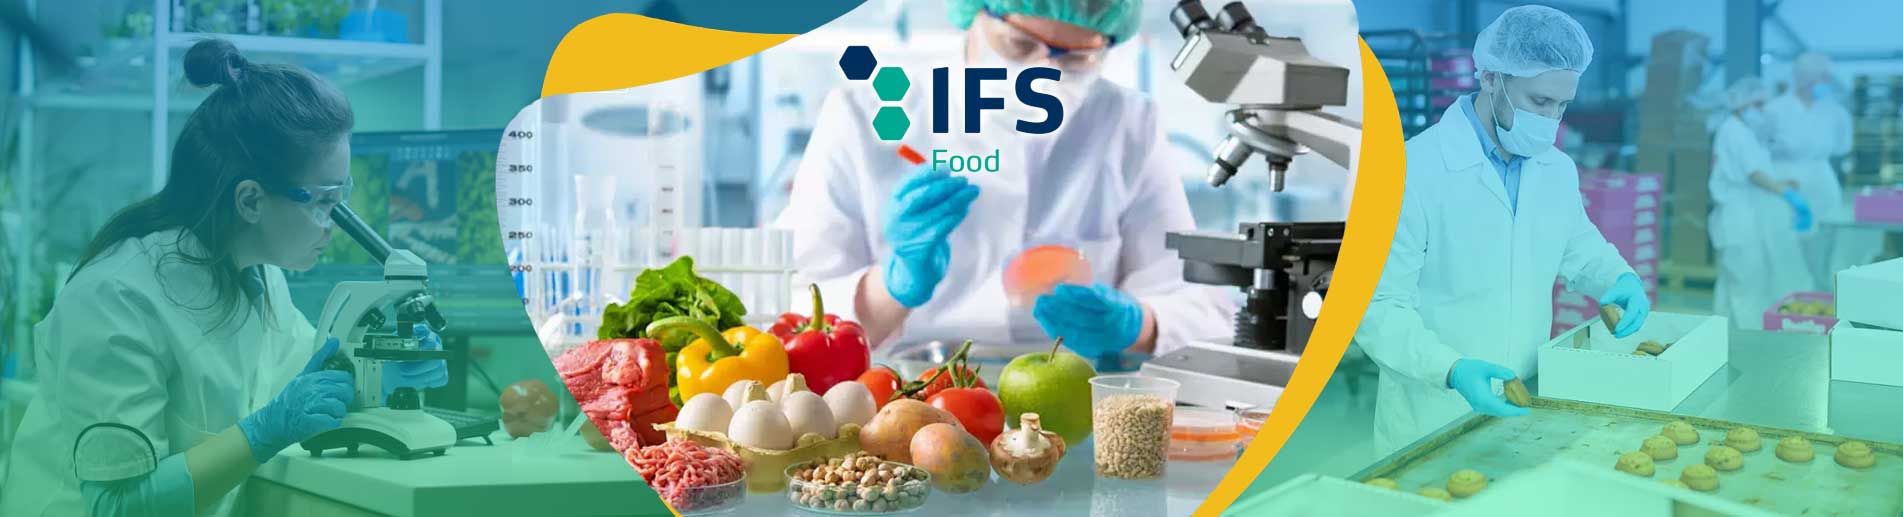 IFS Uluslararası Gıda Standardı Uluslararası Gıda Standardı